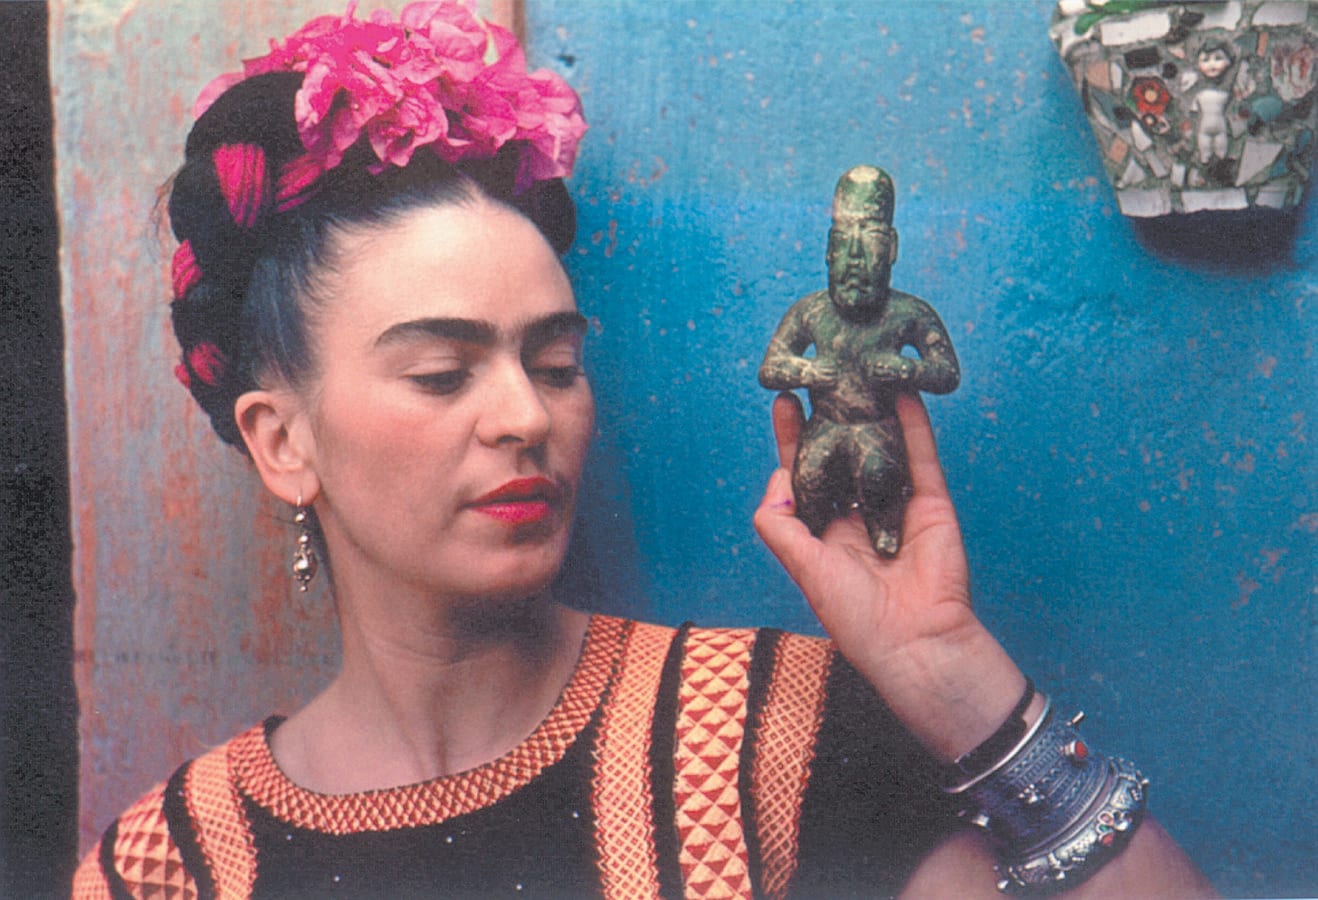 Autorretrato, Frida Kahlo. La pintora Mexicana despierta la devoción de mitómanos de todo pelaje tanto por las cualidades de su obra como por su histora personal, en la que el apasionamiento y el drama caminan de la mano de la artista. Sus manera de crear está marcada por un accidente de autobús que la dejó postrada en una cama durante meses cuando era adolescente y cuyas consecuencas arrastraría durante el resto de su vida